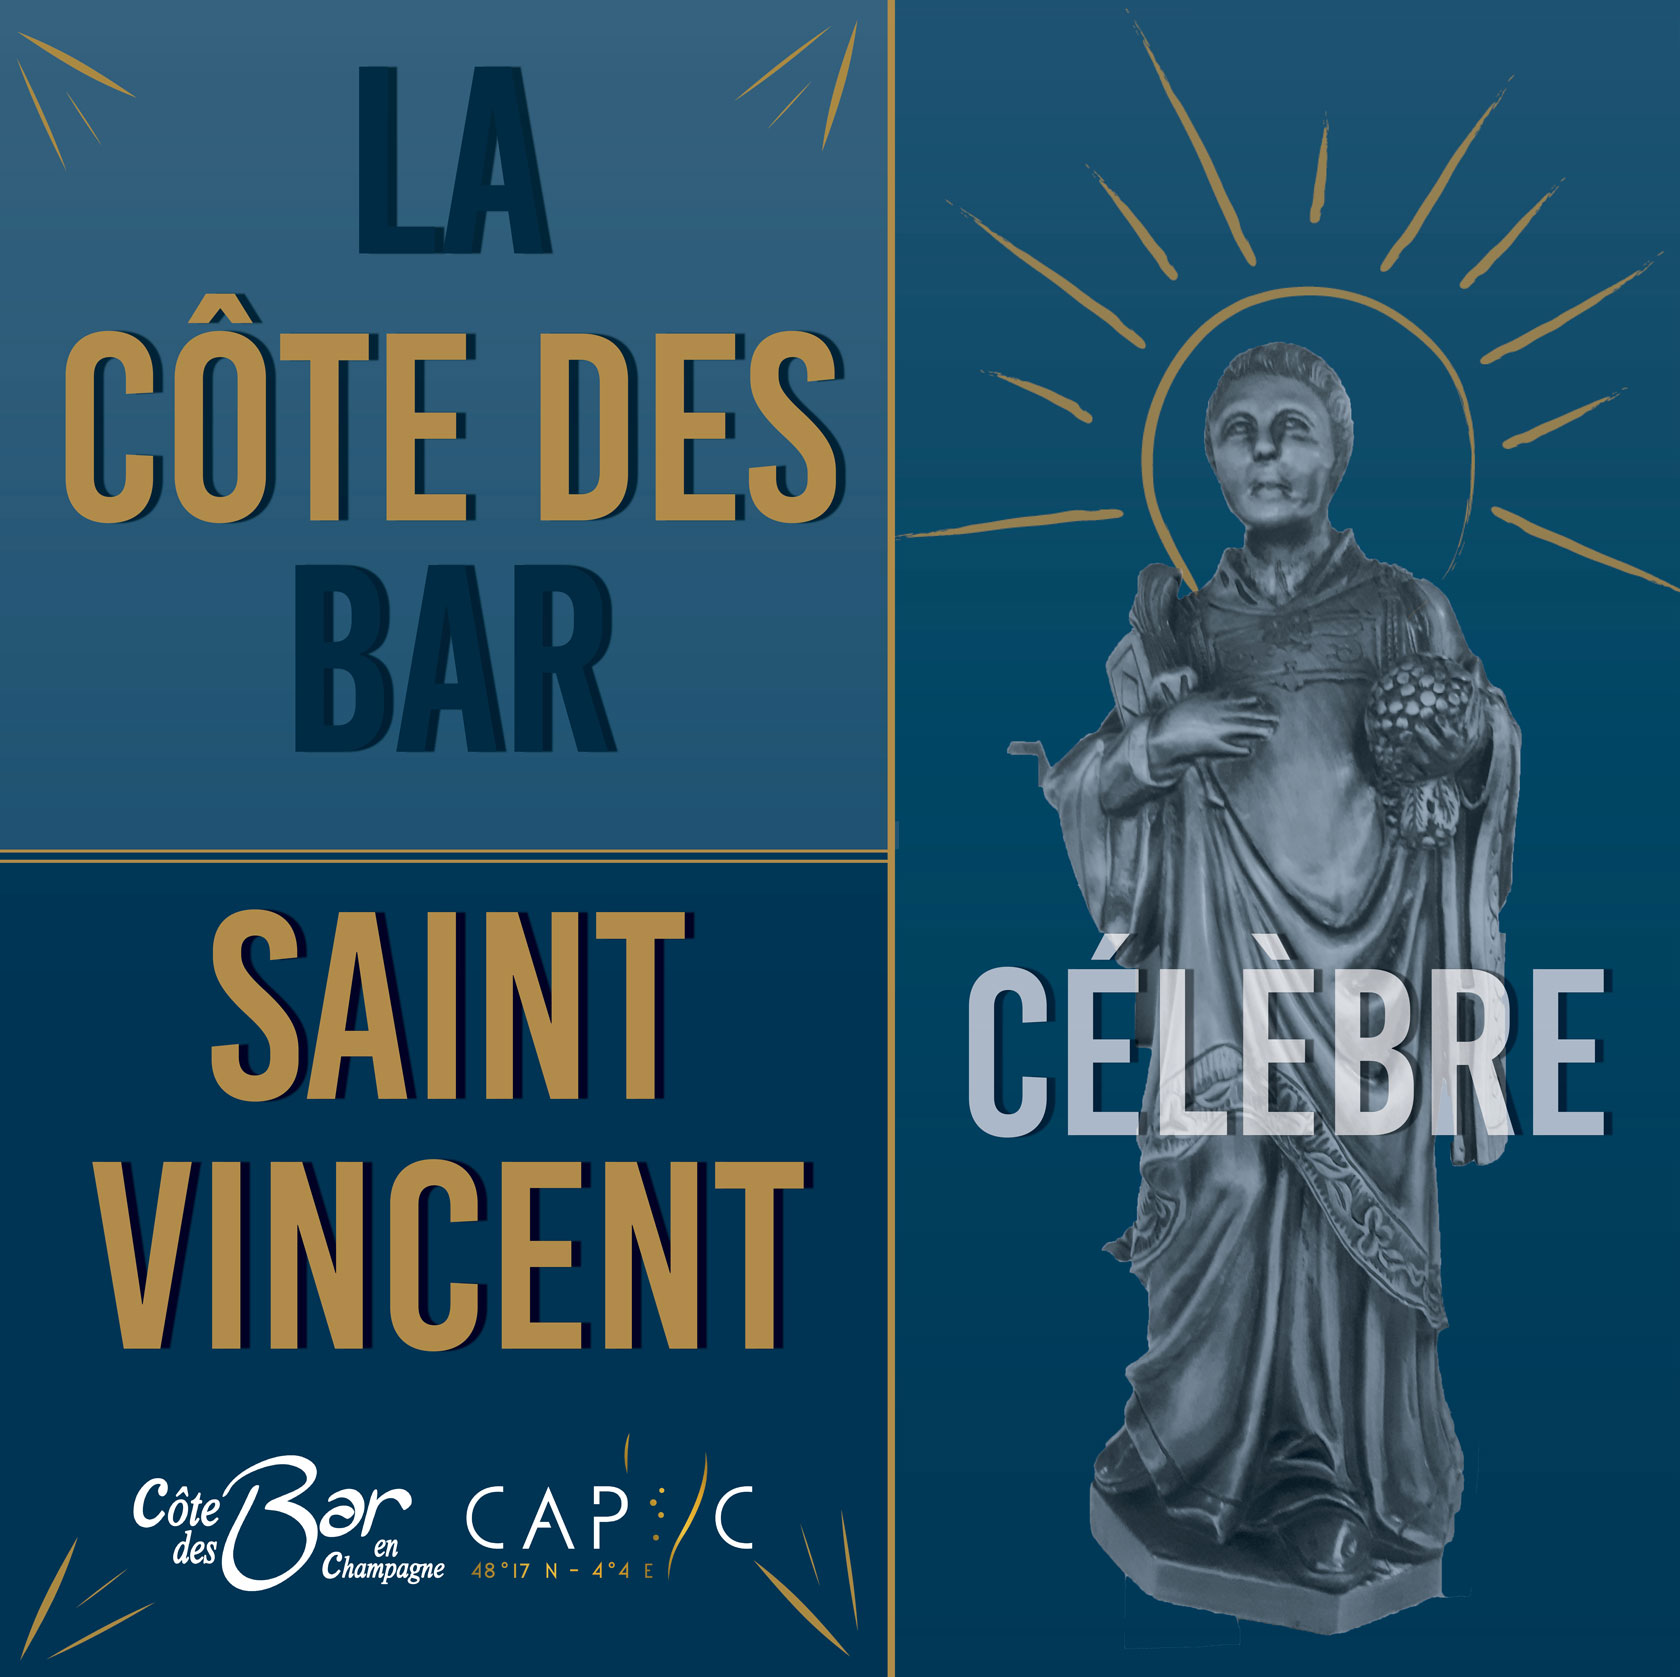 Saint-Vincent-Cote-des-Bar